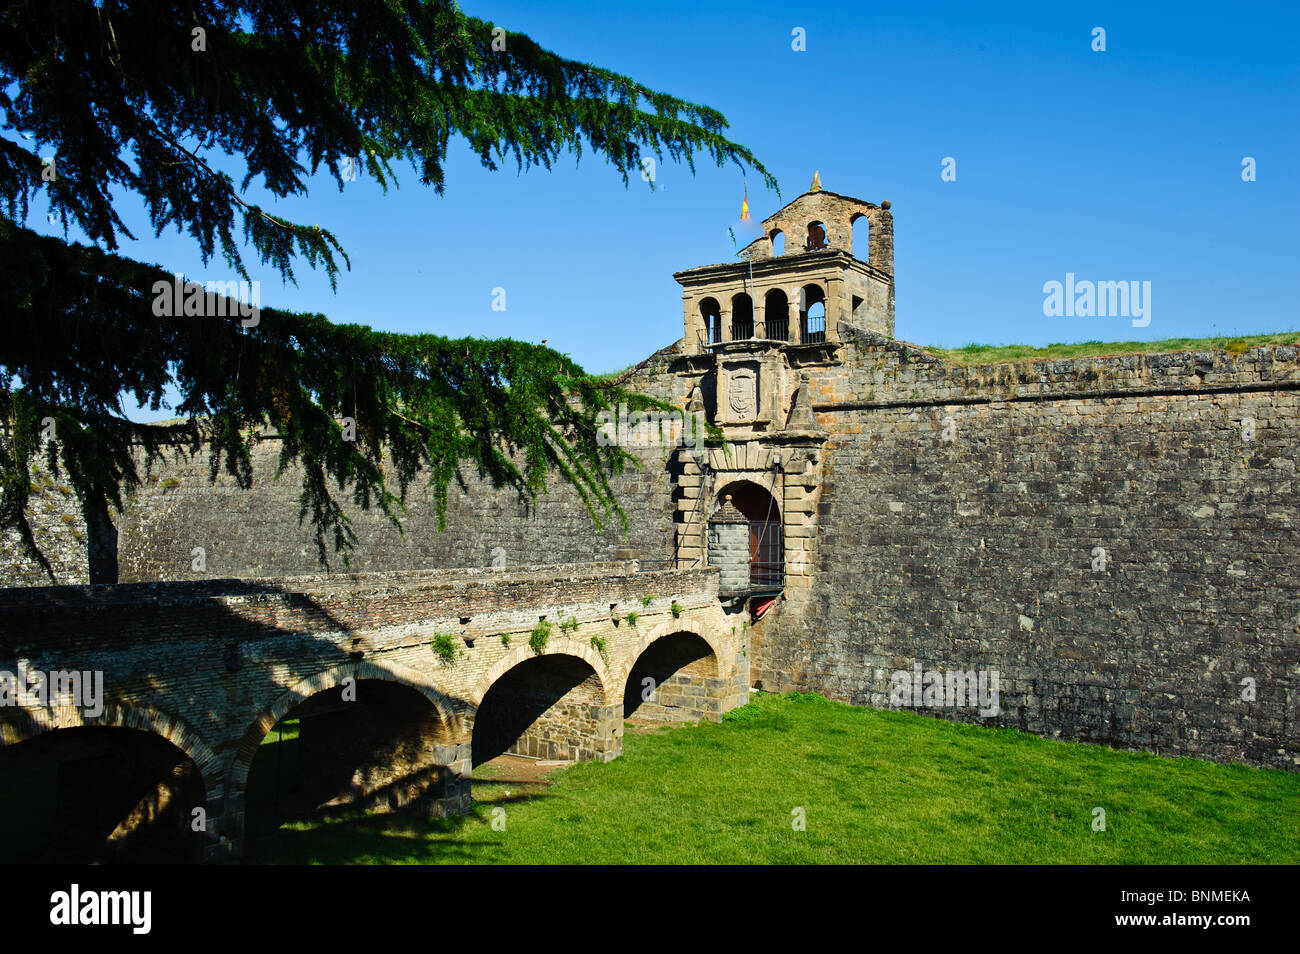 L'ancienne place forte, ville fortifiée dans la région de Jaca, dans le nord-est de l'Espagne près de la frontière française dans la province de l'Aragon Banque D'Images